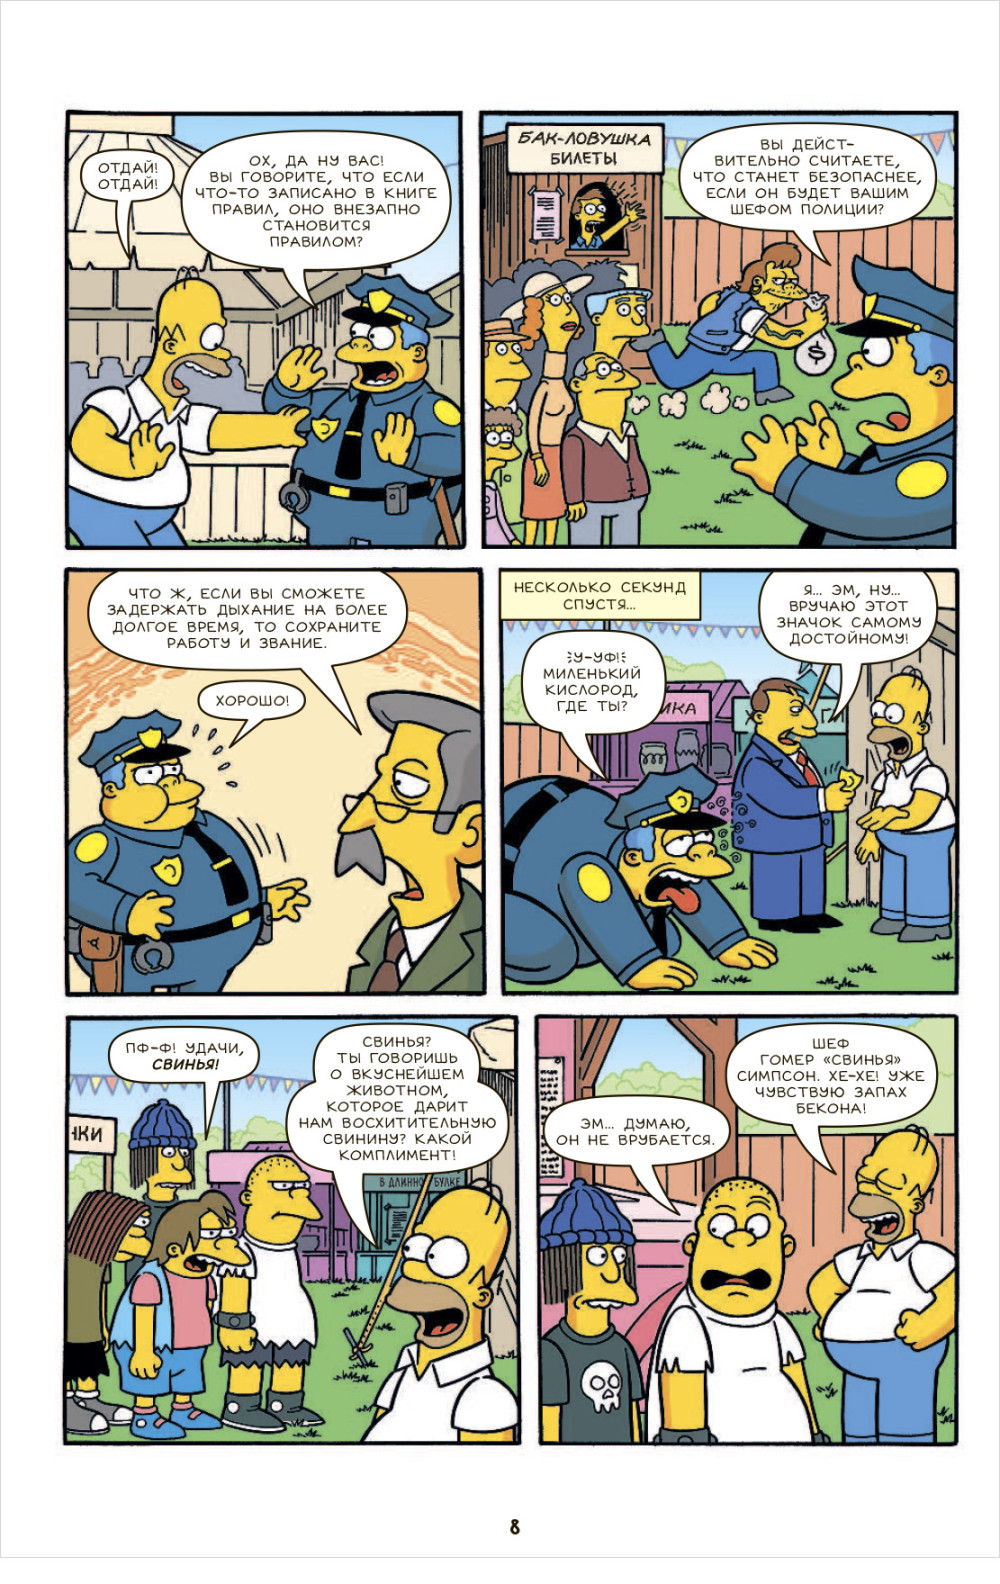  Simpsons: .  5